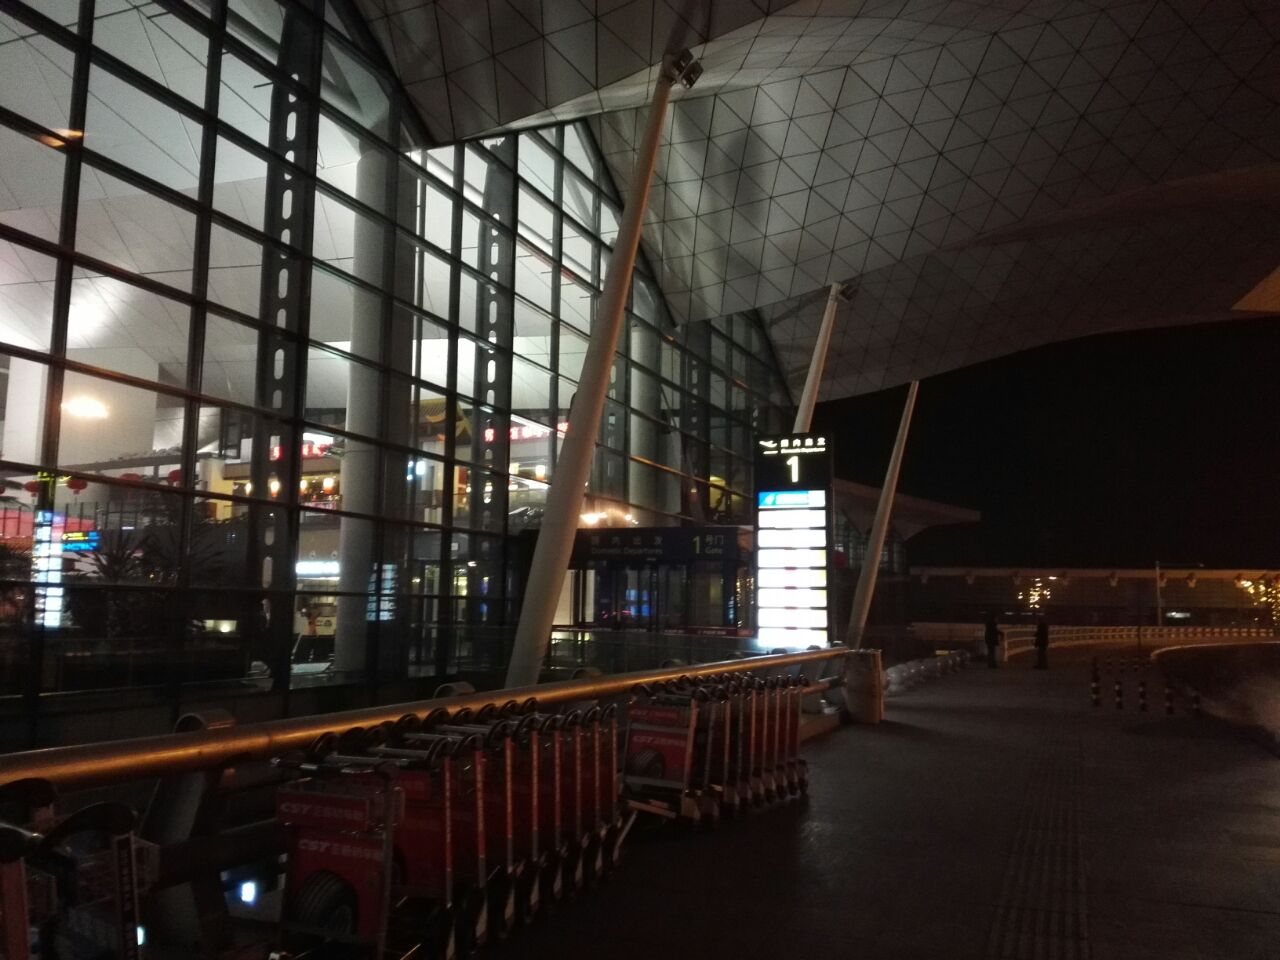 沈阳桃仙机场夜景照片图片